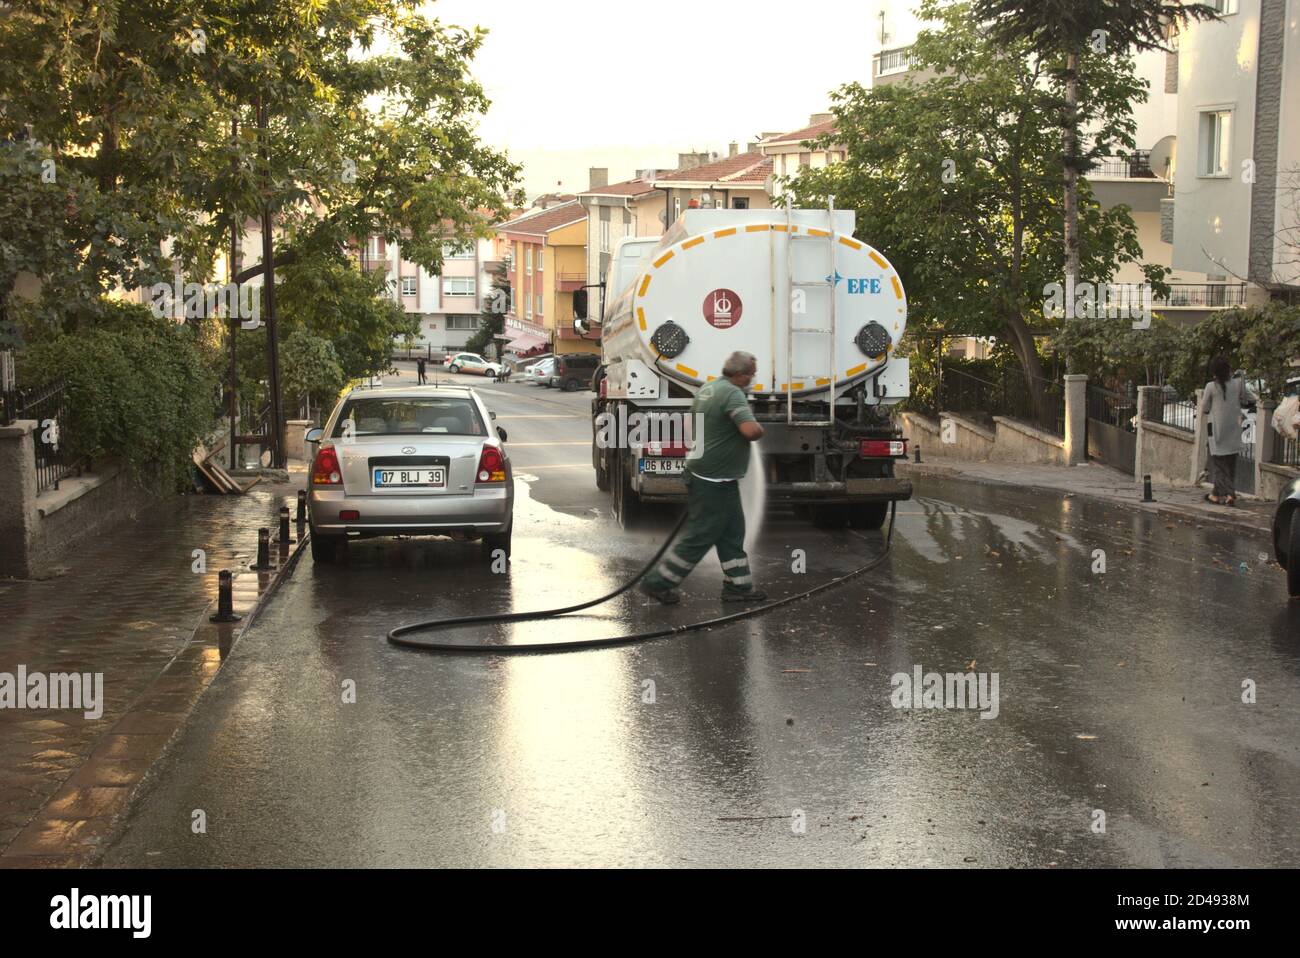 Ankara/Turkey - 28/09/2020 männlicher Arbeiter, der eine Straße wascht und desinfiziert Mit einem Schlauch, der an den Behälter angeschlossen ist Stockfoto